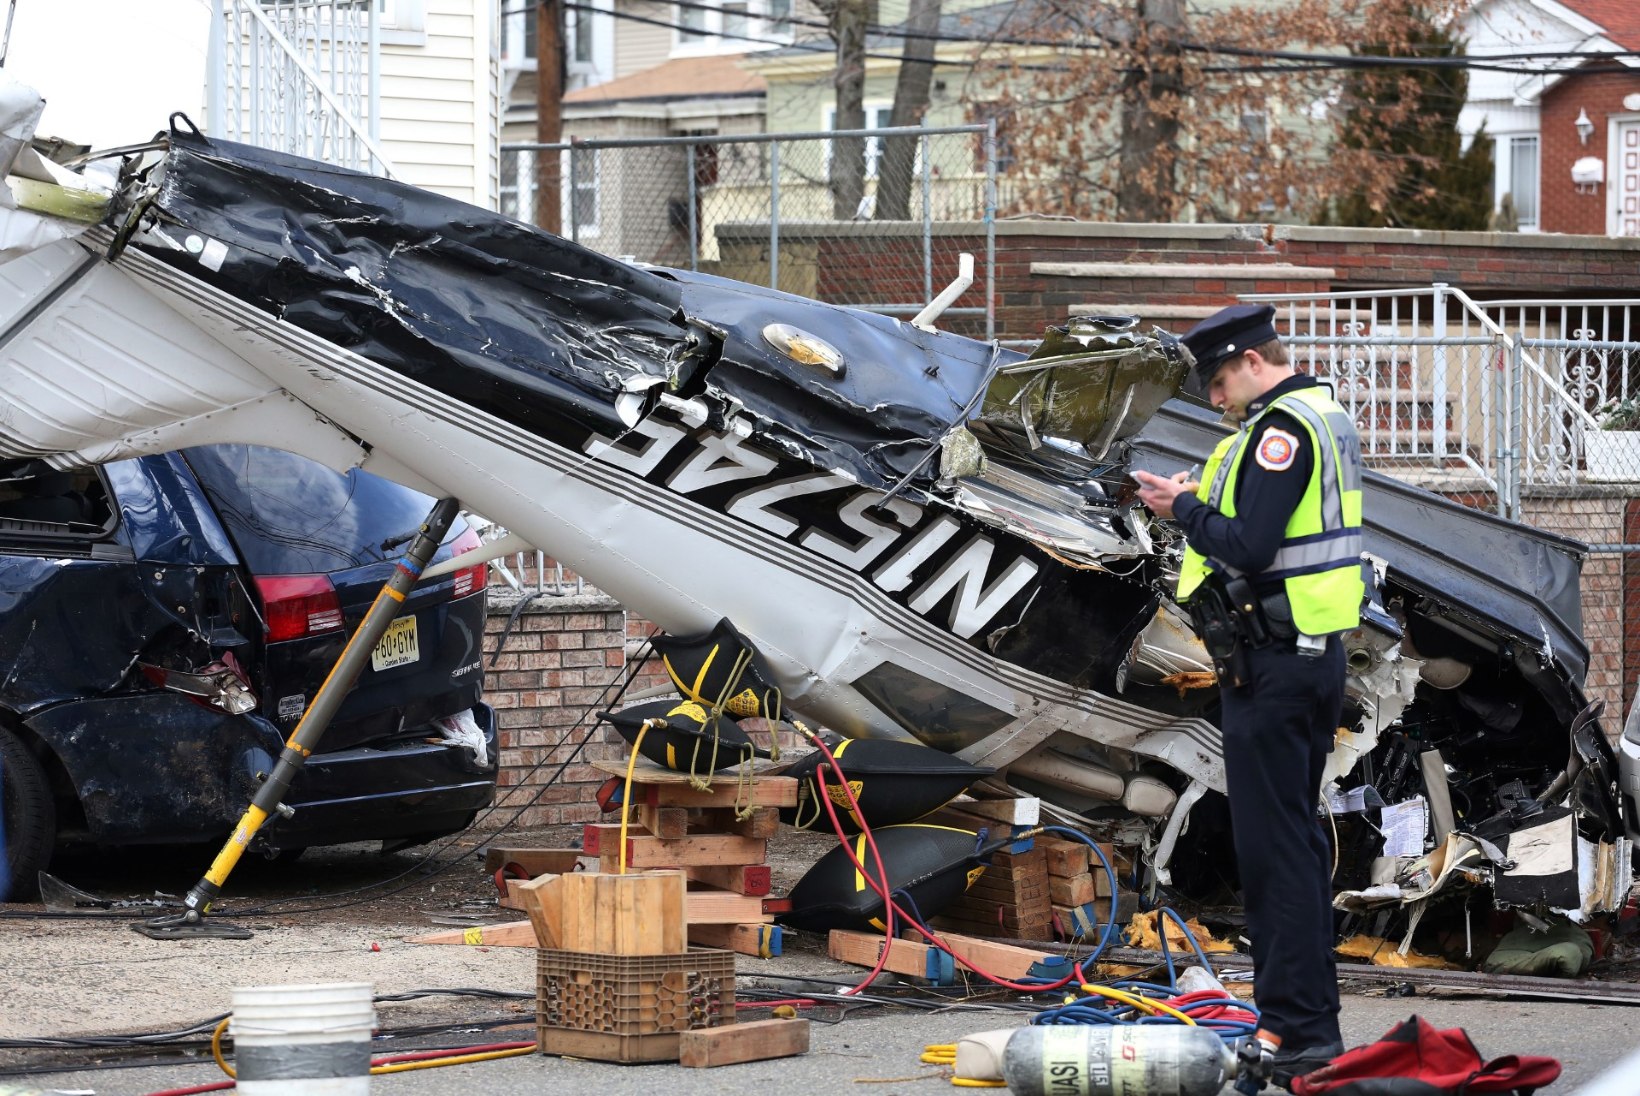 FOTOD | ÕNNELIK ÕNNETUS! Keset linna lennukiga alla kukkunud piloot jäi imekombel ellu